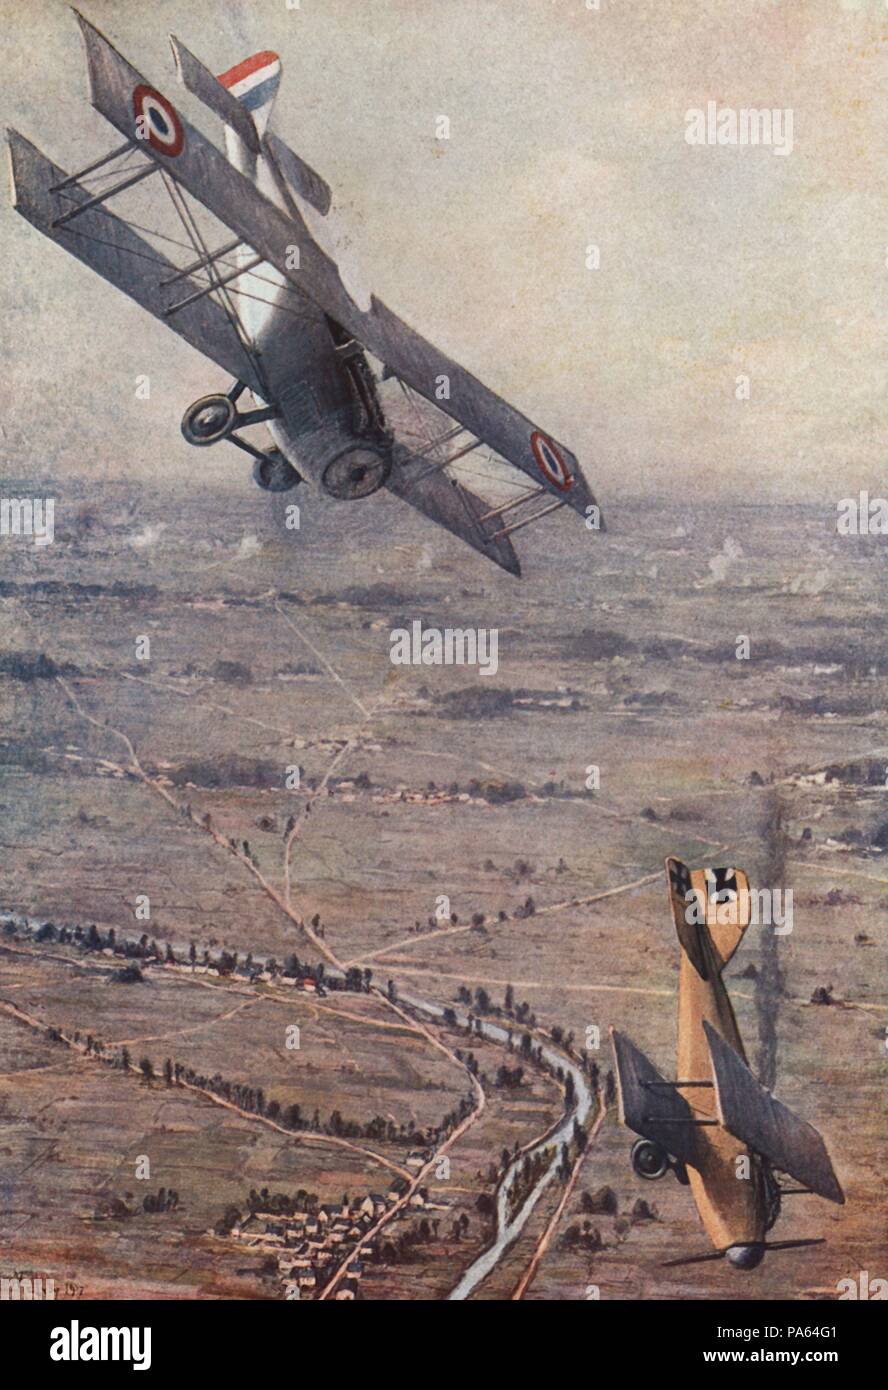 Primera guerra mundial (1914-1918). Francia. Combate aéreo; Albatros alemán derribado por un Spad francés.Grabado de 1916. Stock Photo